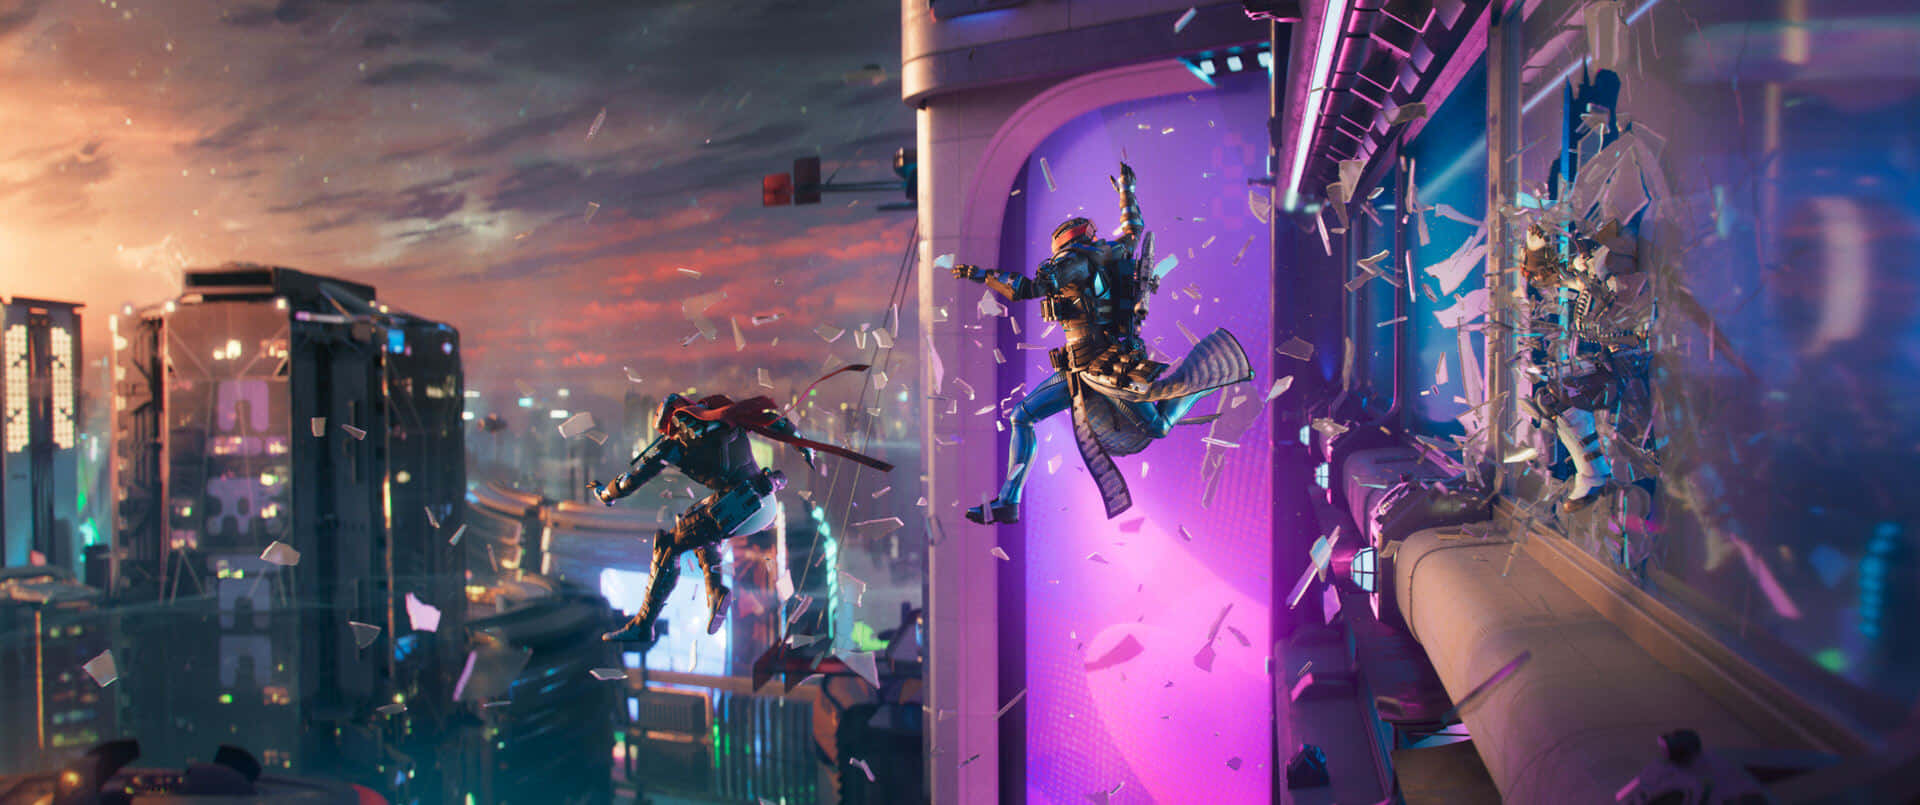 Destiny2 Lightfall Action Scene Wallpaper